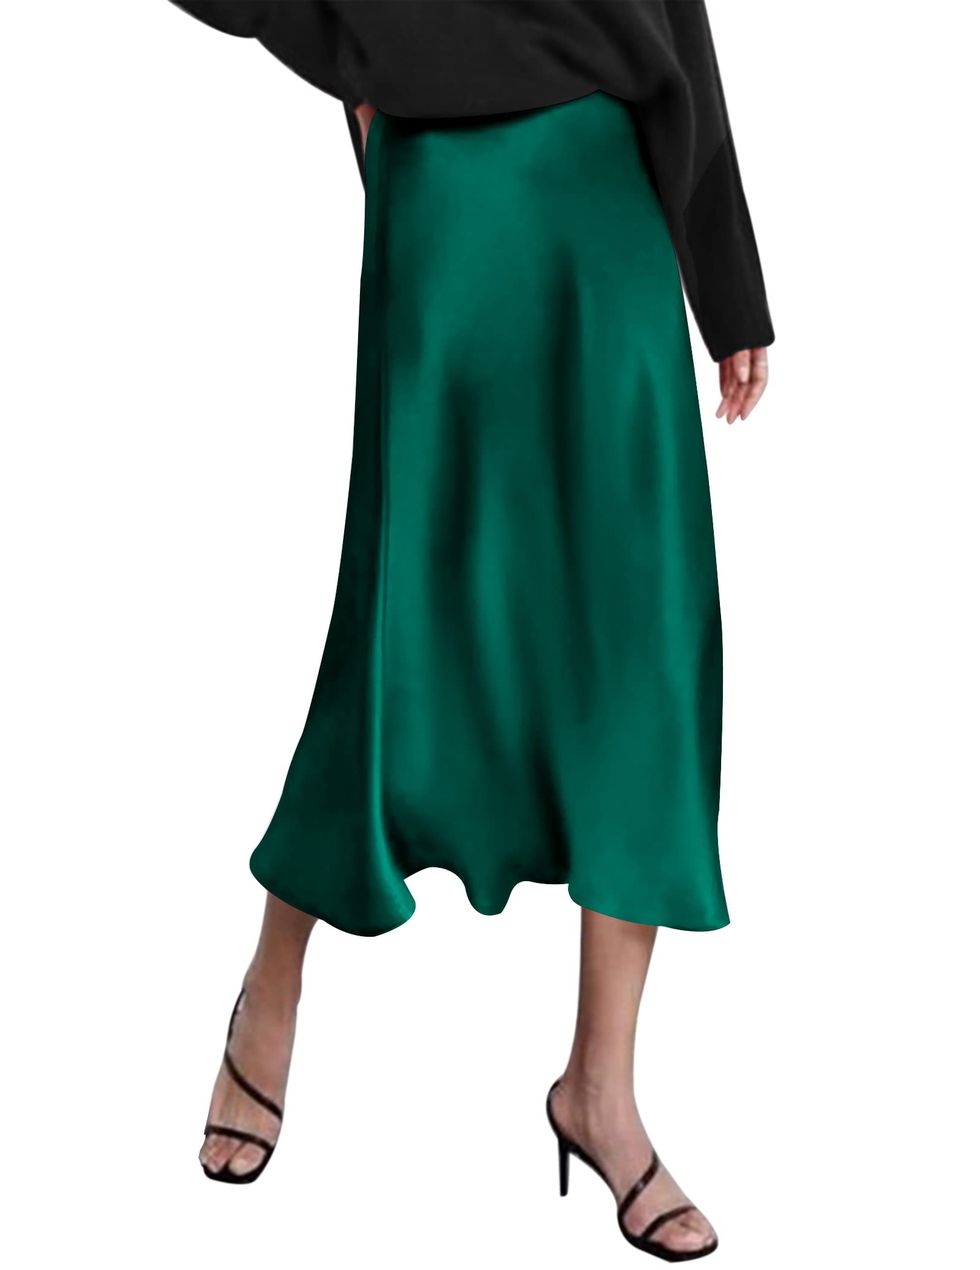 Falda midi satinada en color verde de Zeagoo para Amazon